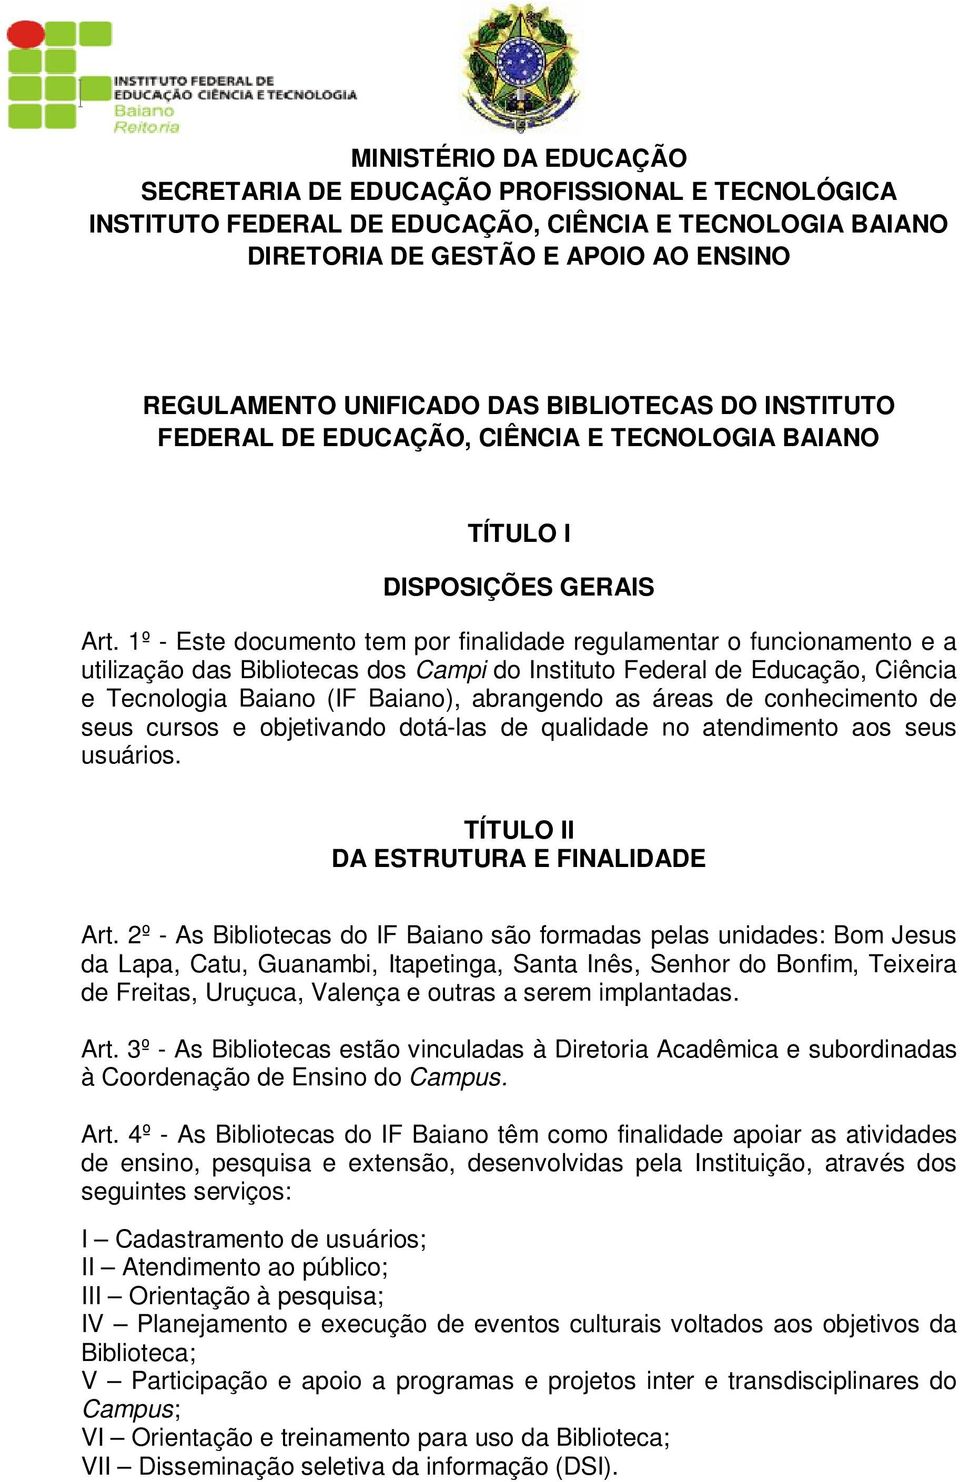 1º - Este documento tem por finalidade regulamentar o funcionamento e a utilização das Bibliotecas dos Campi do Instituto Federal de Educação, Ciência e Tecnologia Baiano (IF Baiano), abrangendo as